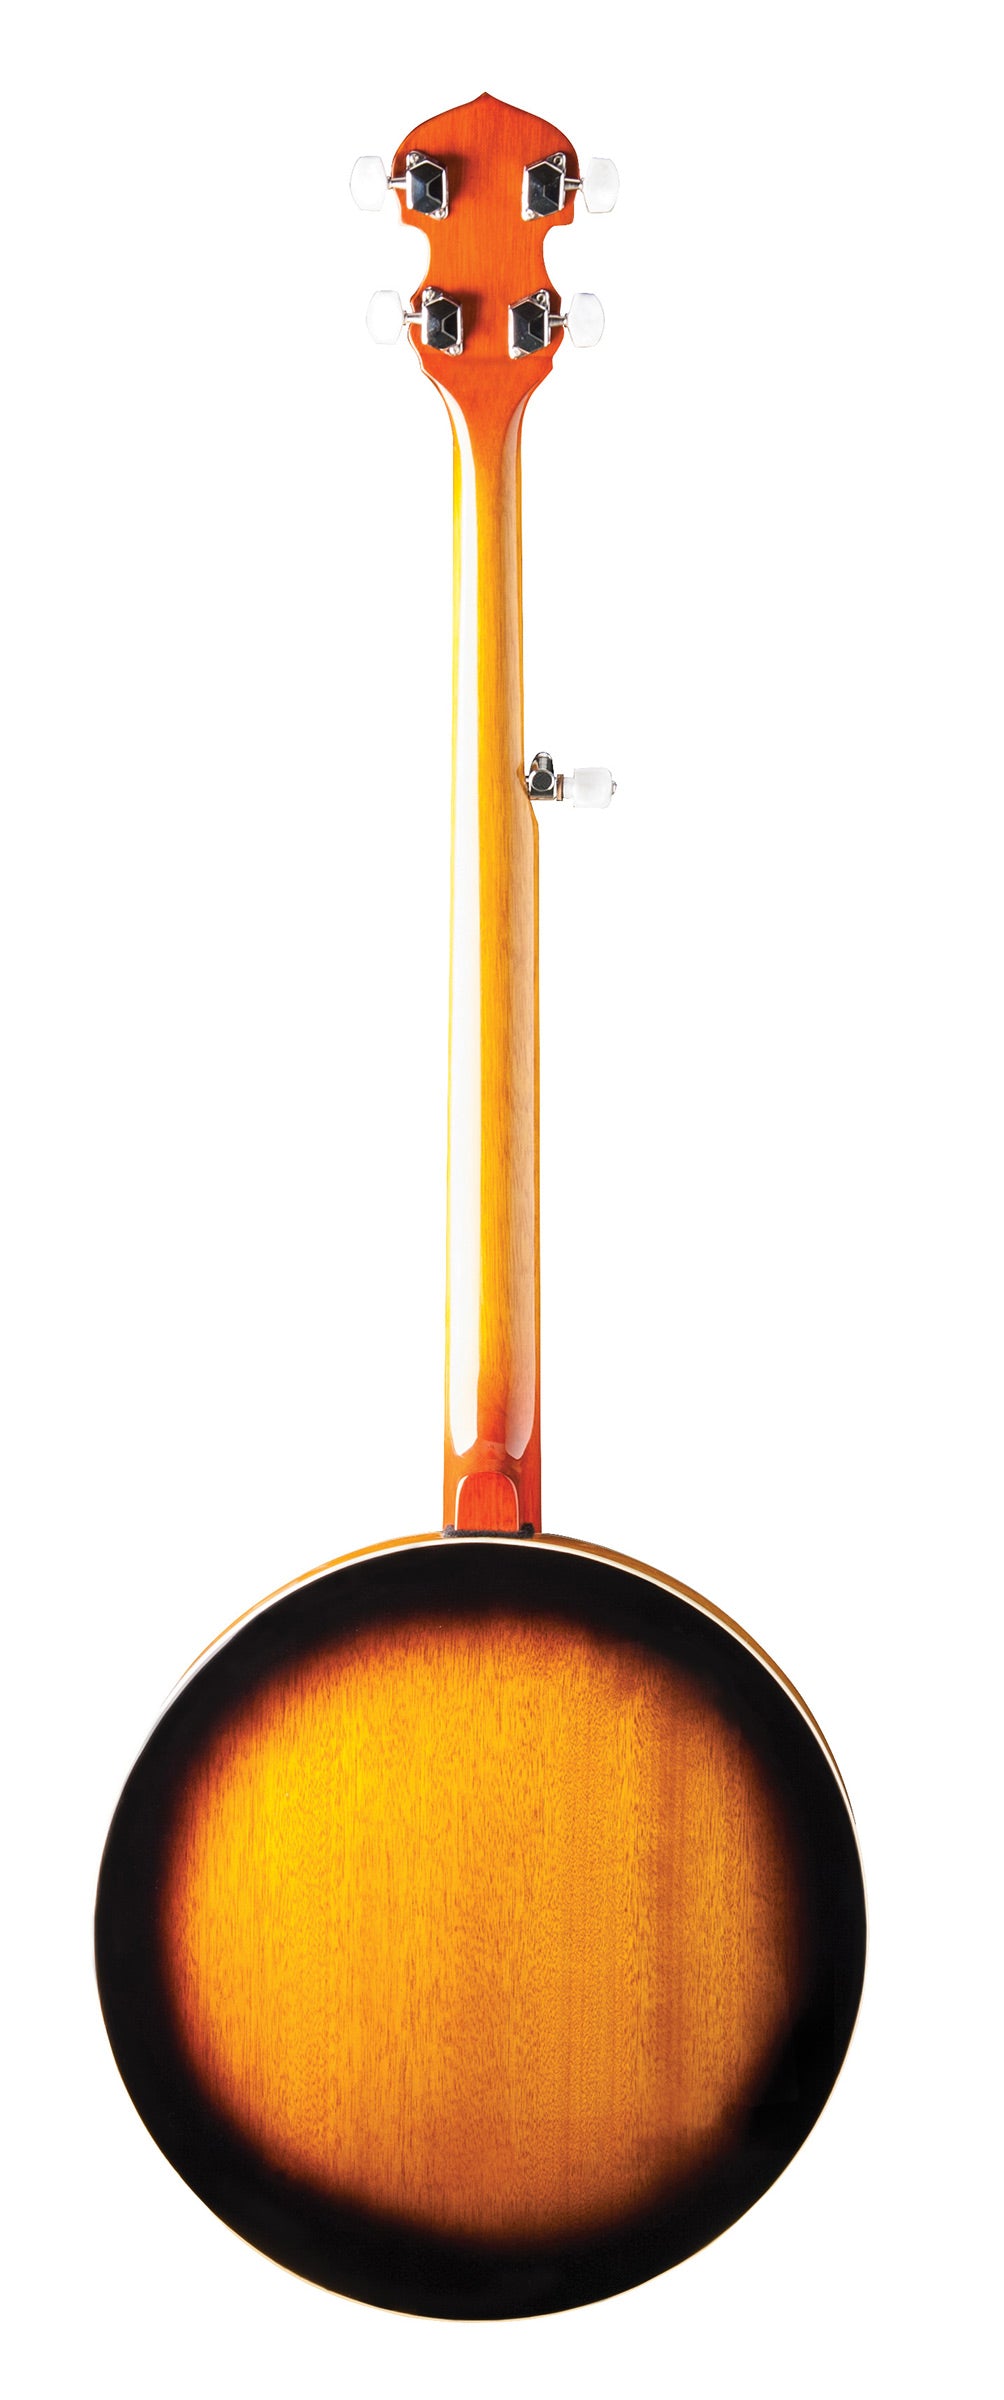 Washburn B10 Americana Series (5 String) Banjo Item ID: B10-A-U